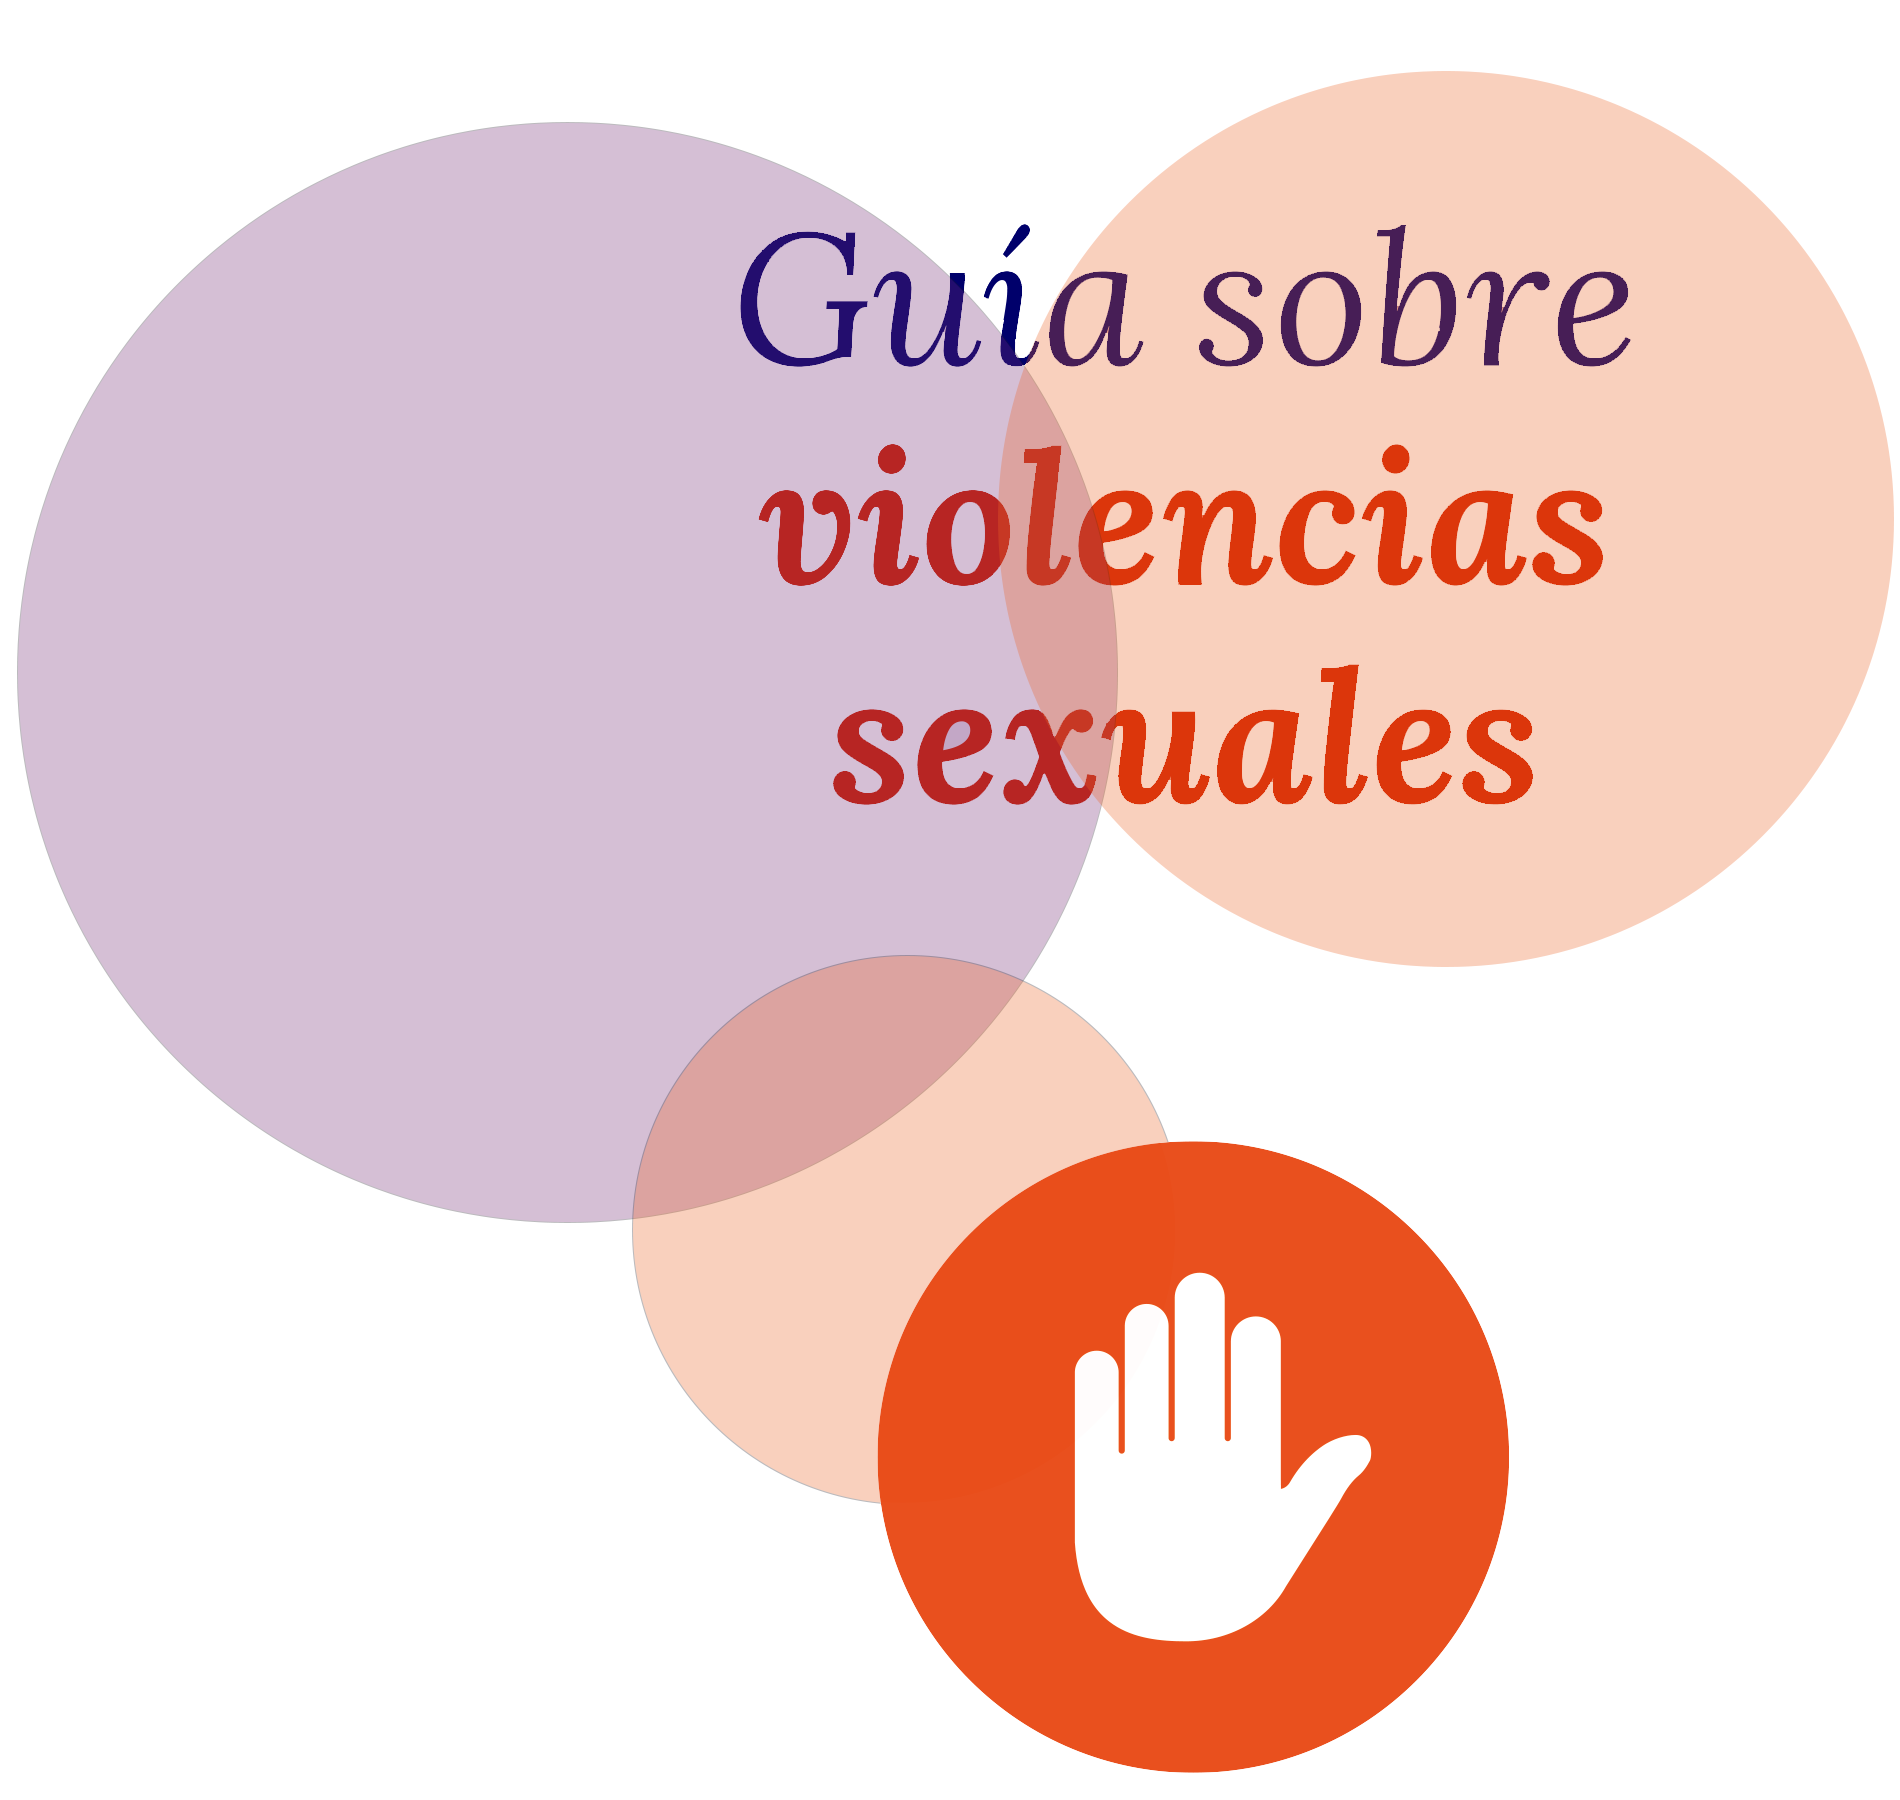 Guía sobre violencias sexuales